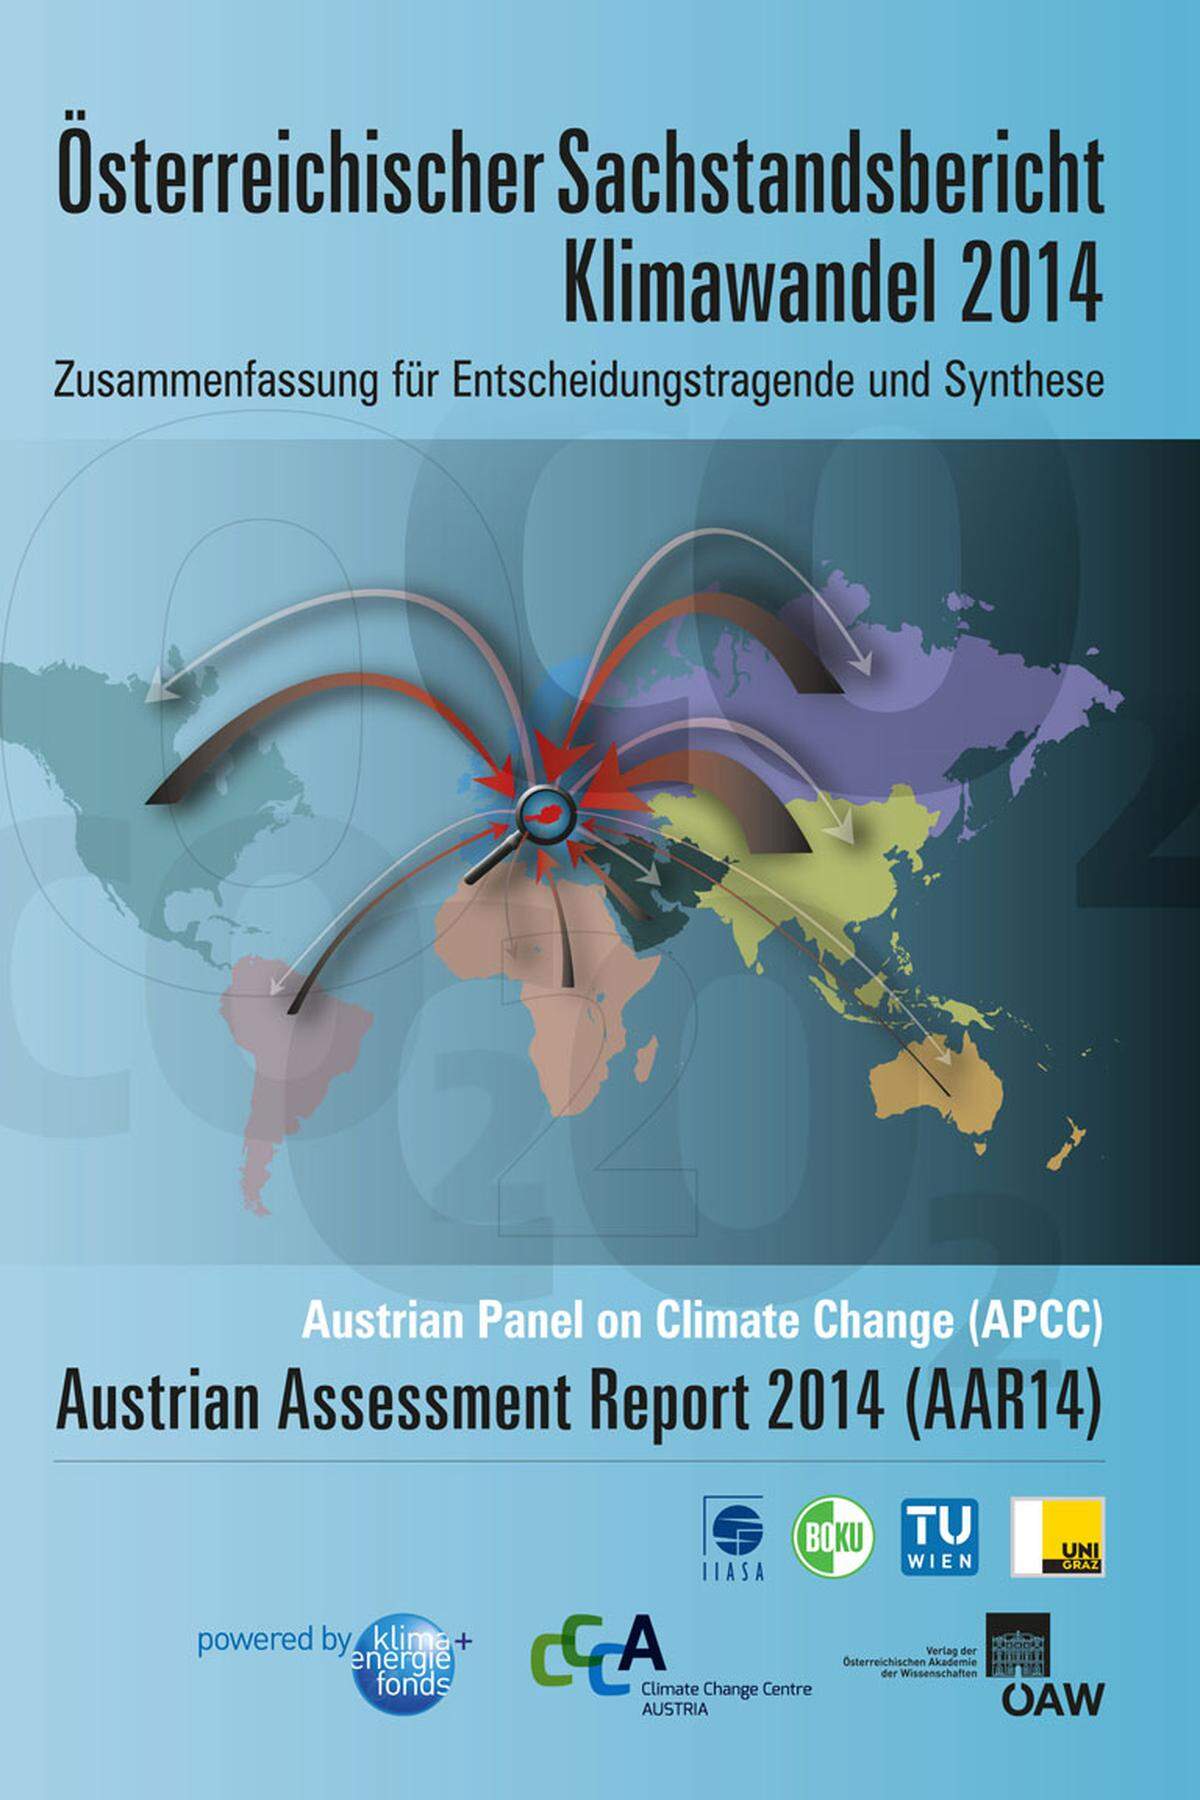 Rund 240 österreichische Wissenschaftler haben in einer gemeinsamen, dreijährigen Anstrengung diesen ersten Sachstandsbericht zum Klimawandel in Österreich erarbeitet und "damit den aktuellen Wissensstand zu Ausprägungen des Klimawandels in Österreich, seinen Folgen, Minderungs- und Anpassungsmaßnahmen zusammengestellt". Hier finden Sie das Pdf des "Österreichischen Sachstandsbericht Klimawandel 2014".